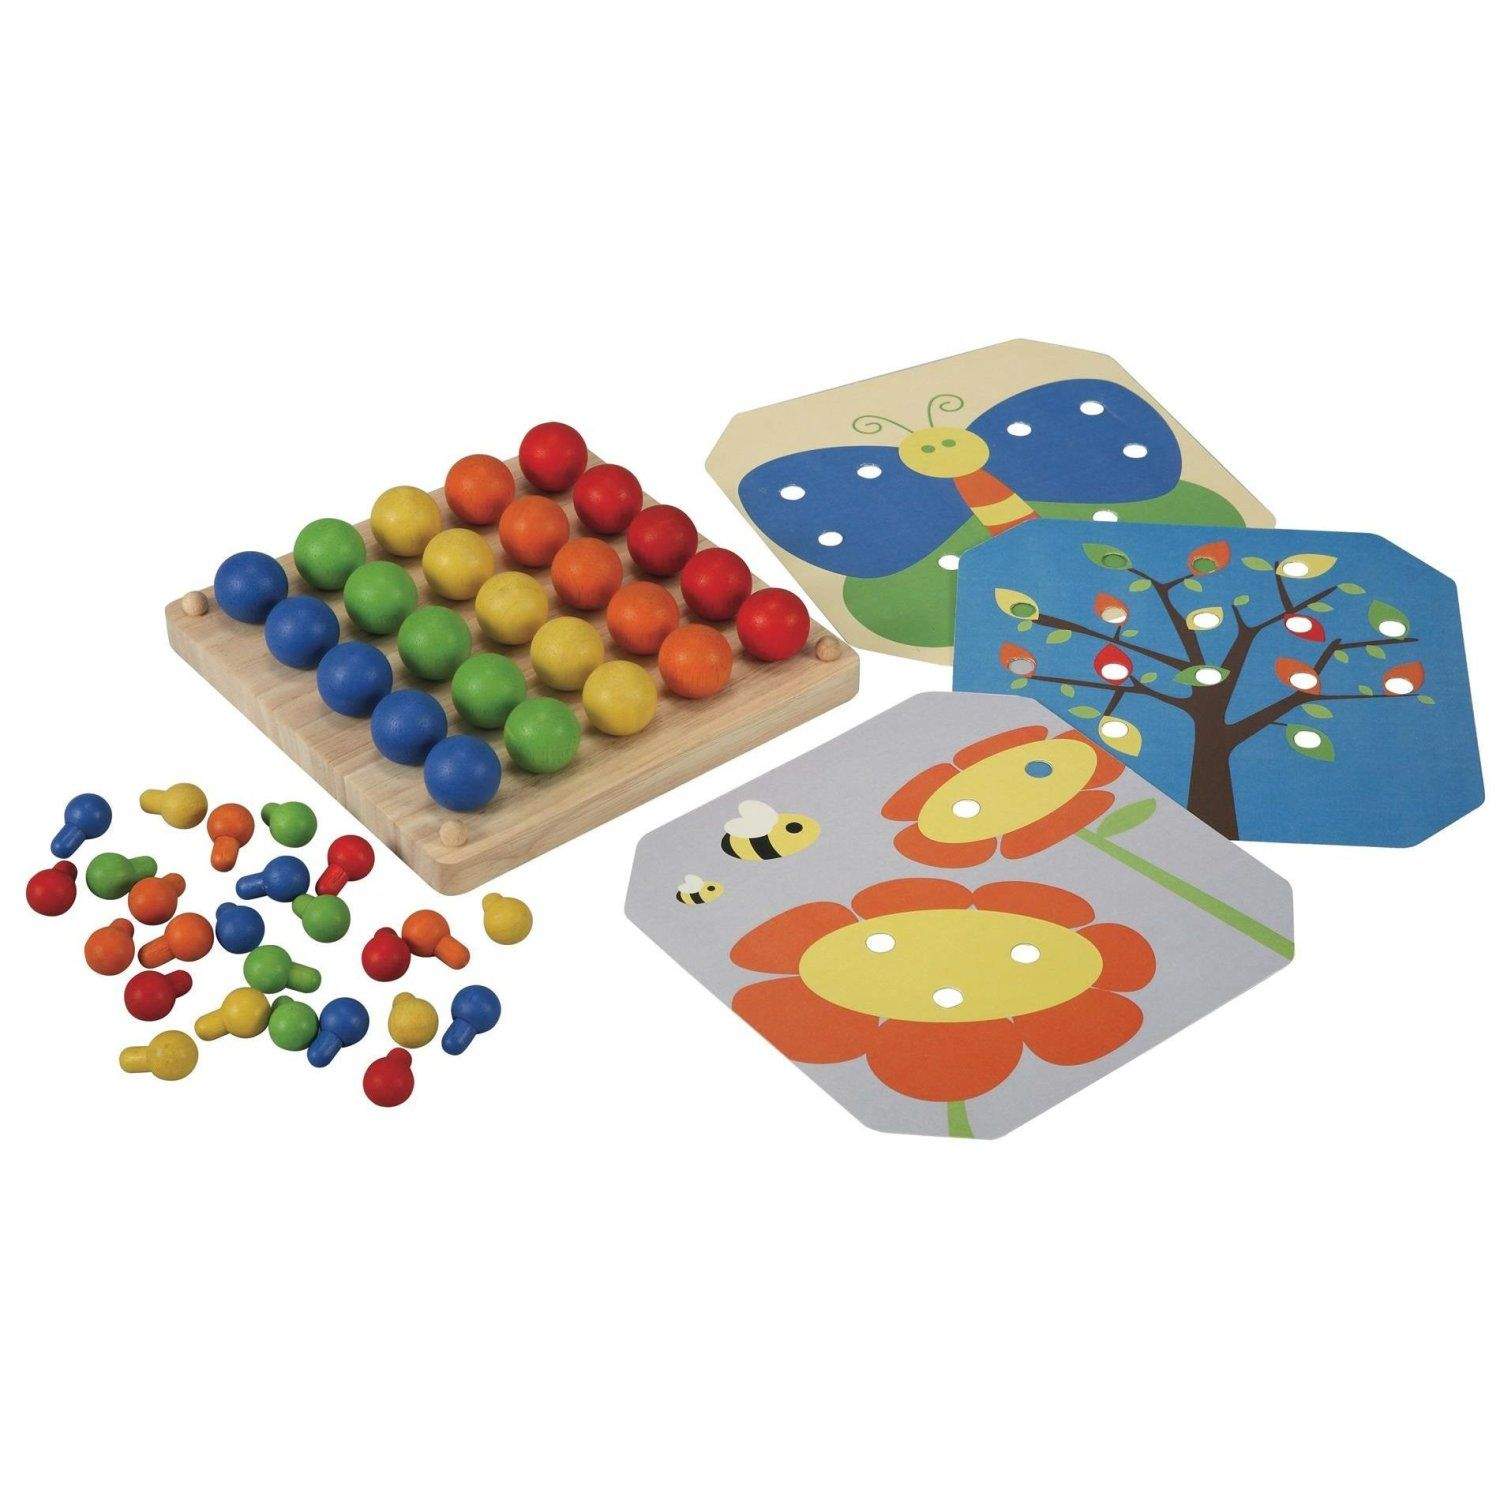 Комплект развивающих игр. Мозаика Plan Toys. PLANTOYS мозаика (5162). Мозаика Plan Toys Learning. 1 Toy мозаика Кнопик (т16698).